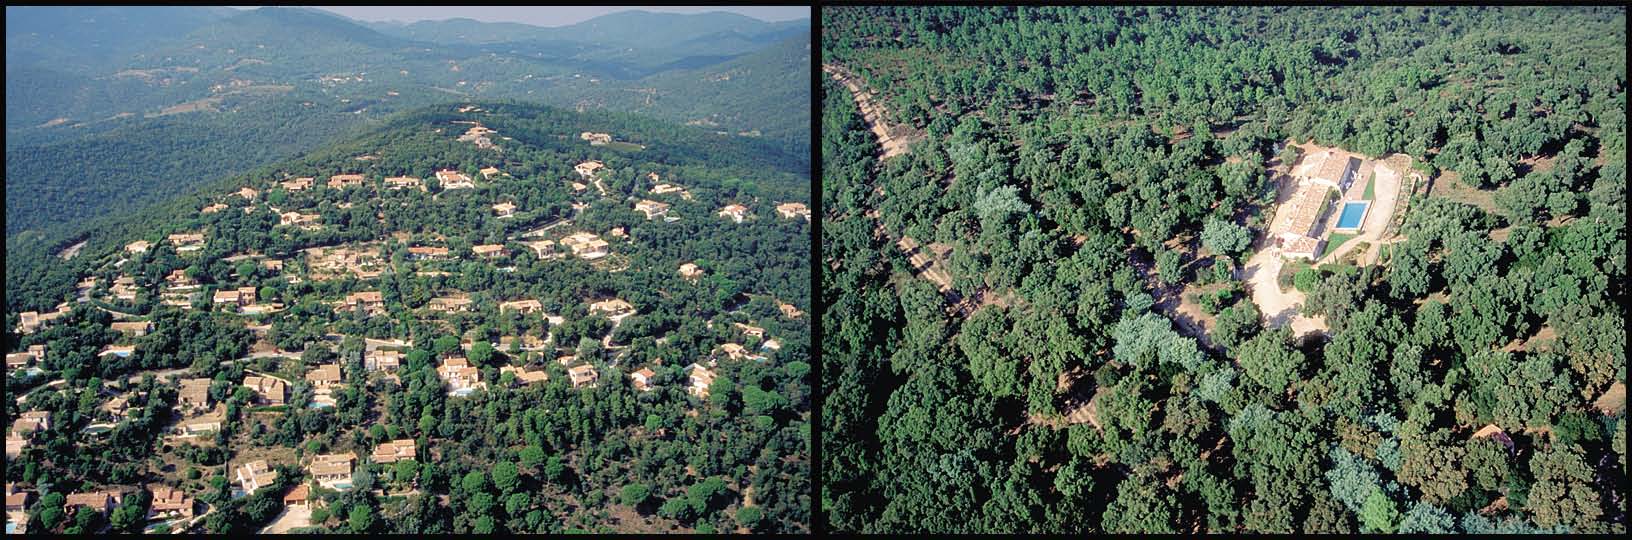 48 Η Ζωή Μας με τις Δασικές Πυρκαγιές: Η Άποψη της Επιστήμης Εικόνα 14. Δύο παραδείγματα από ζώνες μίξης δασών οικισμών (WUI): πυκνή δόμηση (αριστερά) και απομονωμένη κατοικία (δεξιά) σε δασικό τοπίο.